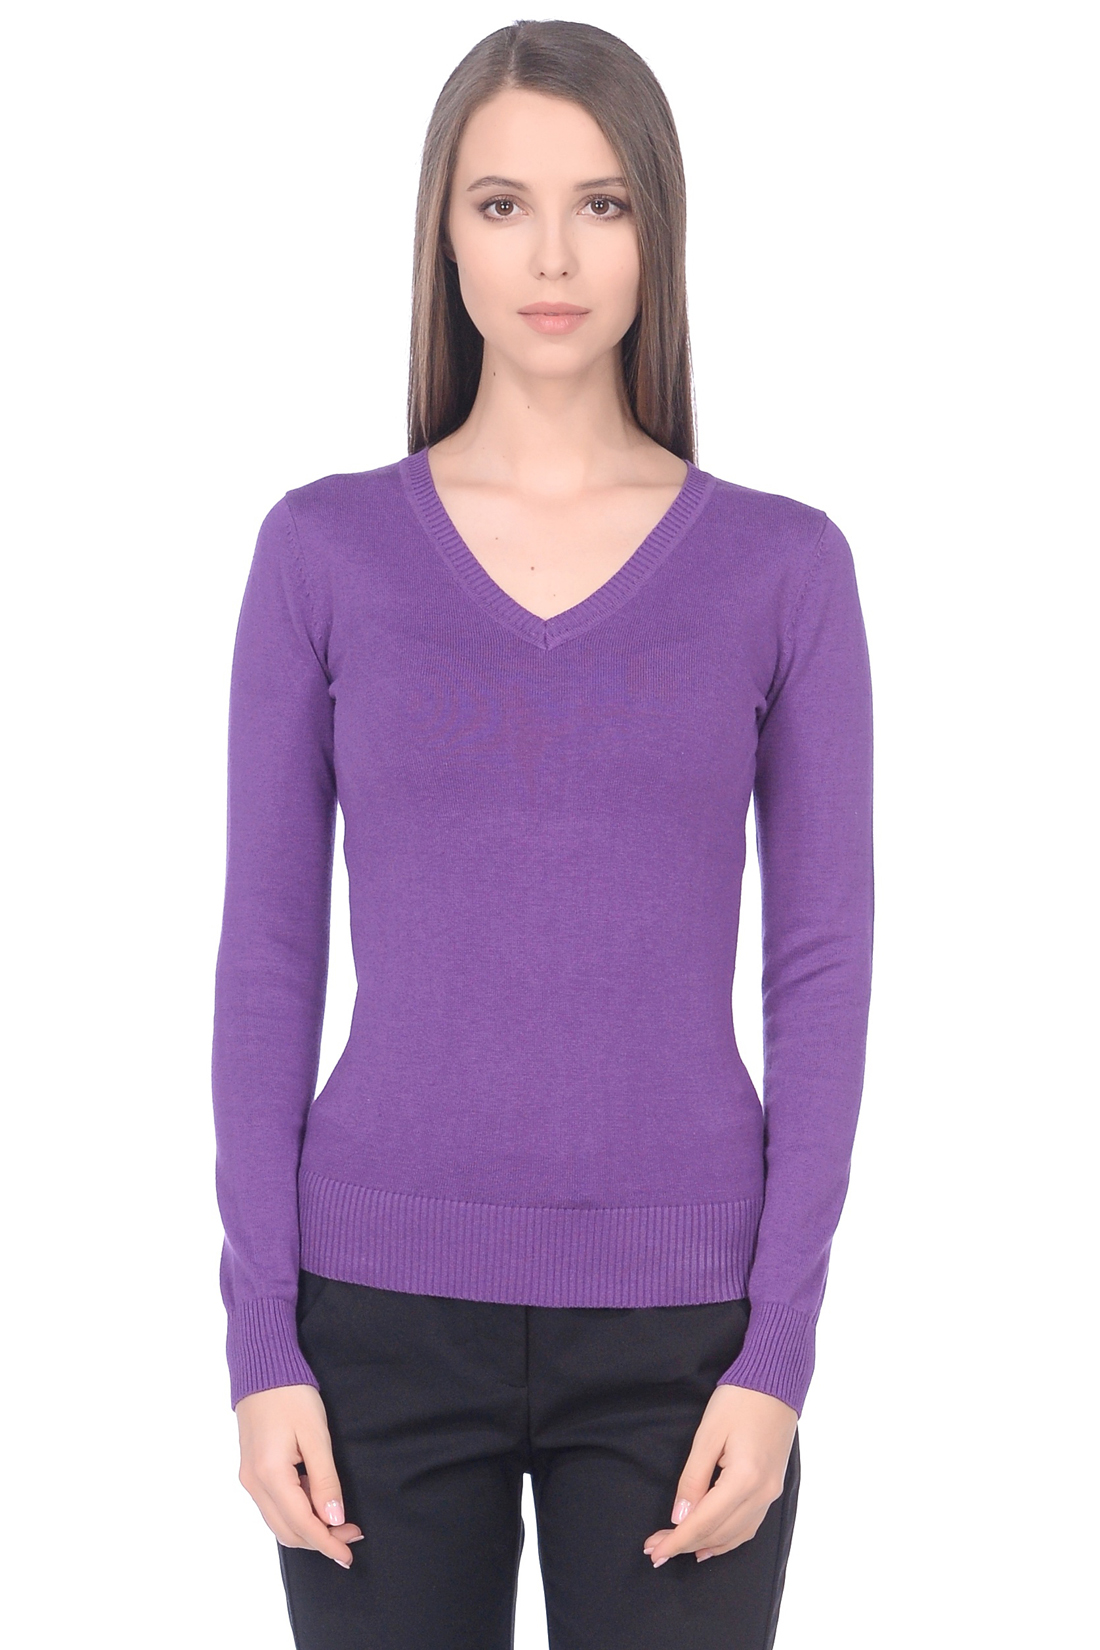 Базовый пуловер из хлопка (арт. baon B139201), размер 3XL, цвет фиолетовый Базовый пуловер из хлопка (арт. baon B139201) - фото 1